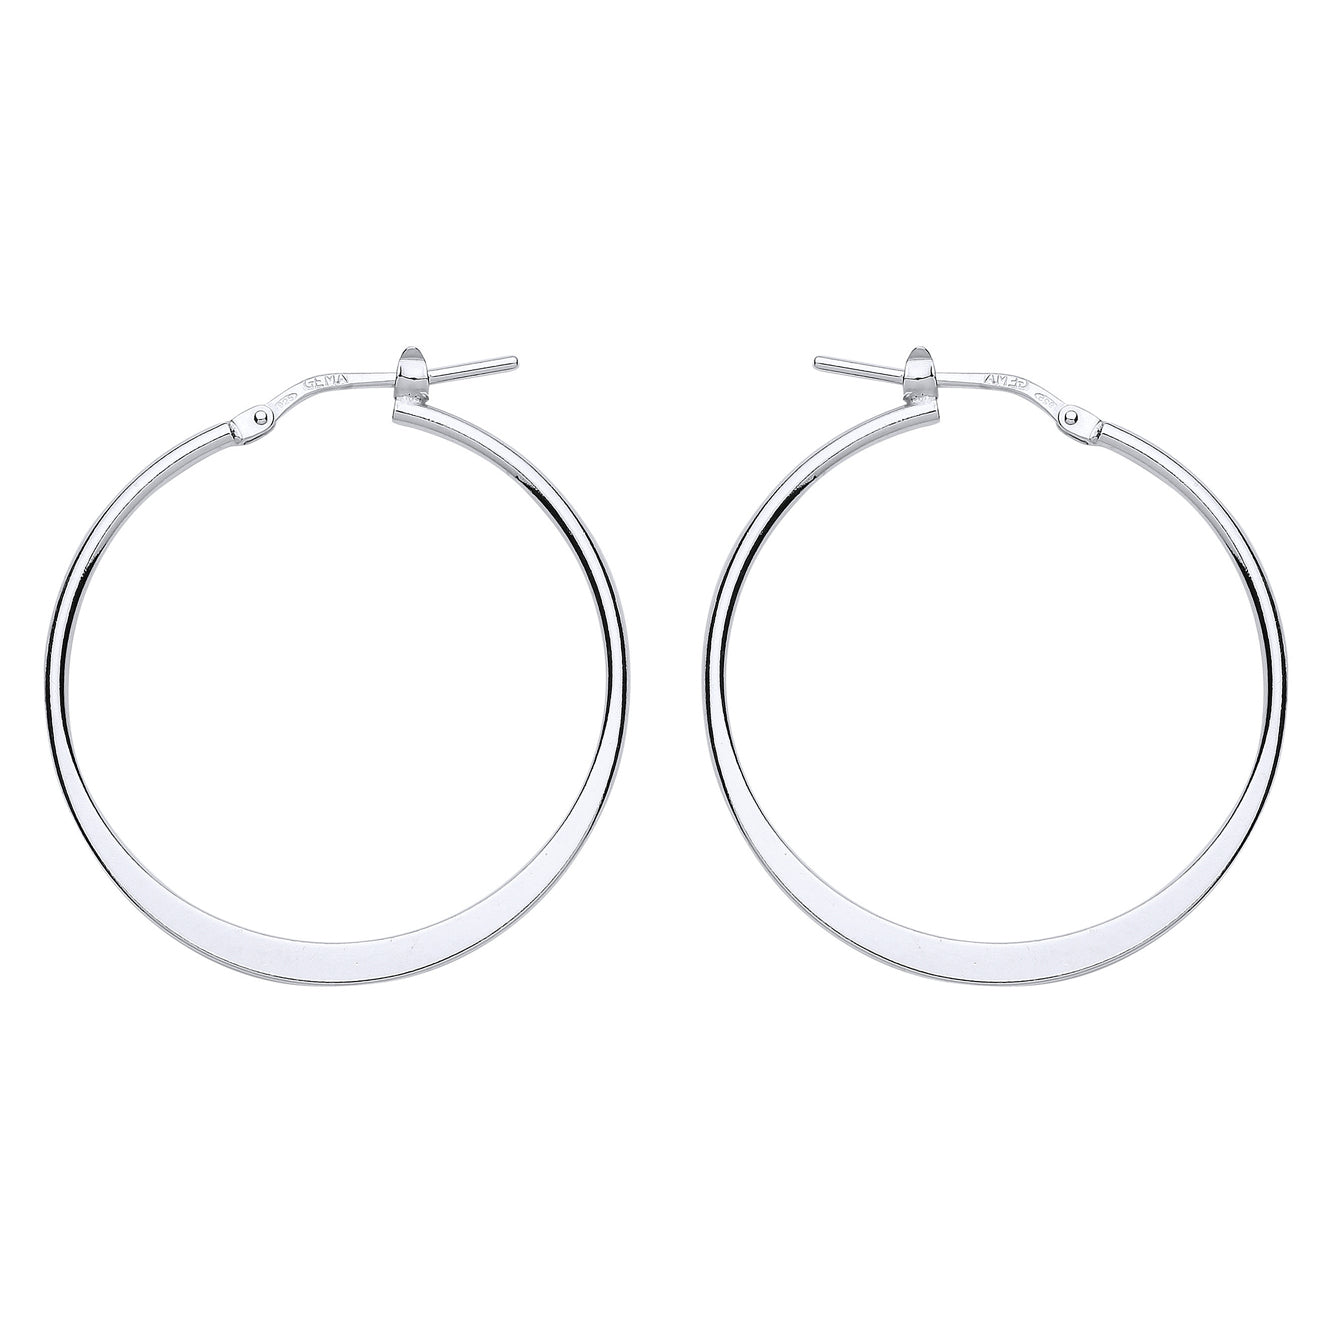 Silver  Graduated Flat Oval Hoop Earrings 33mm - ER96